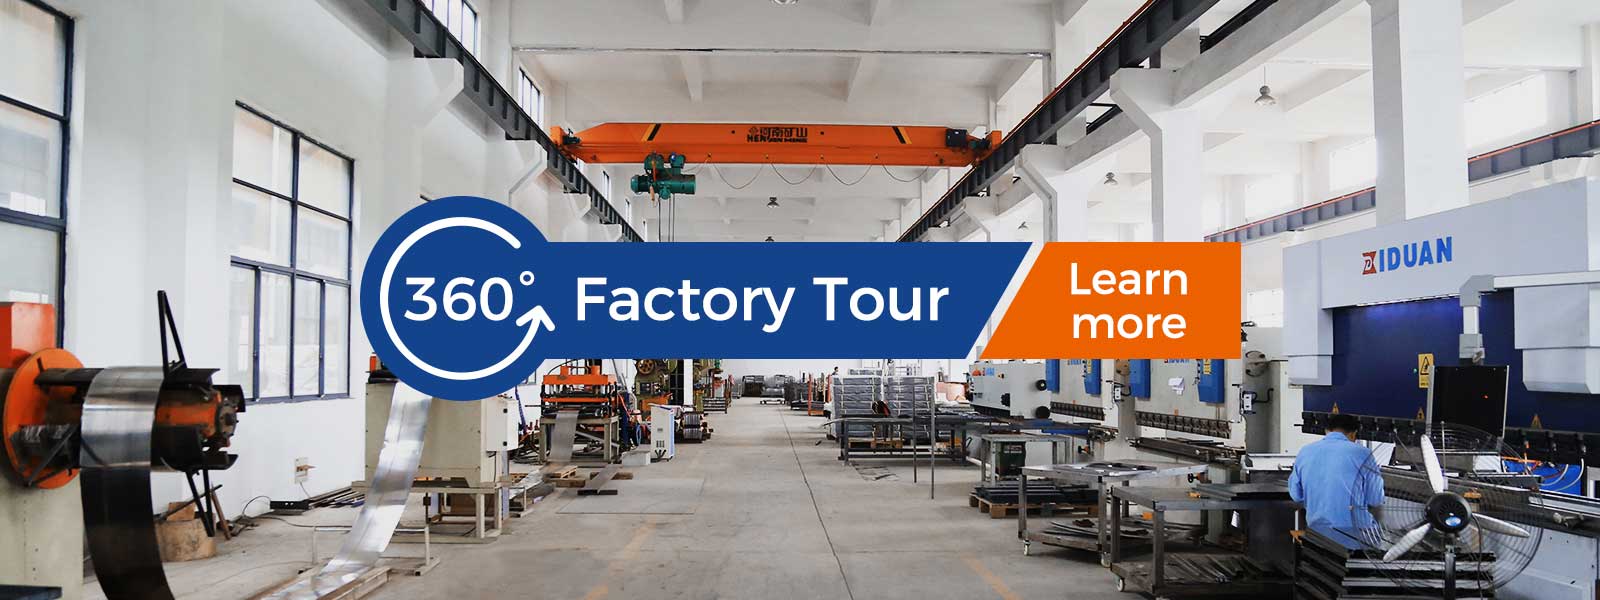 360-factory tour